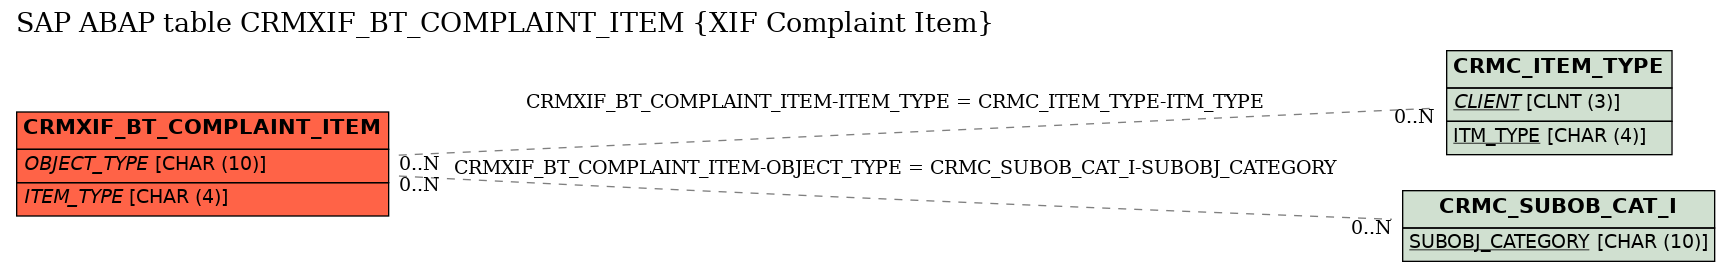 E-R Diagram for table CRMXIF_BT_COMPLAINT_ITEM (XIF Complaint Item)